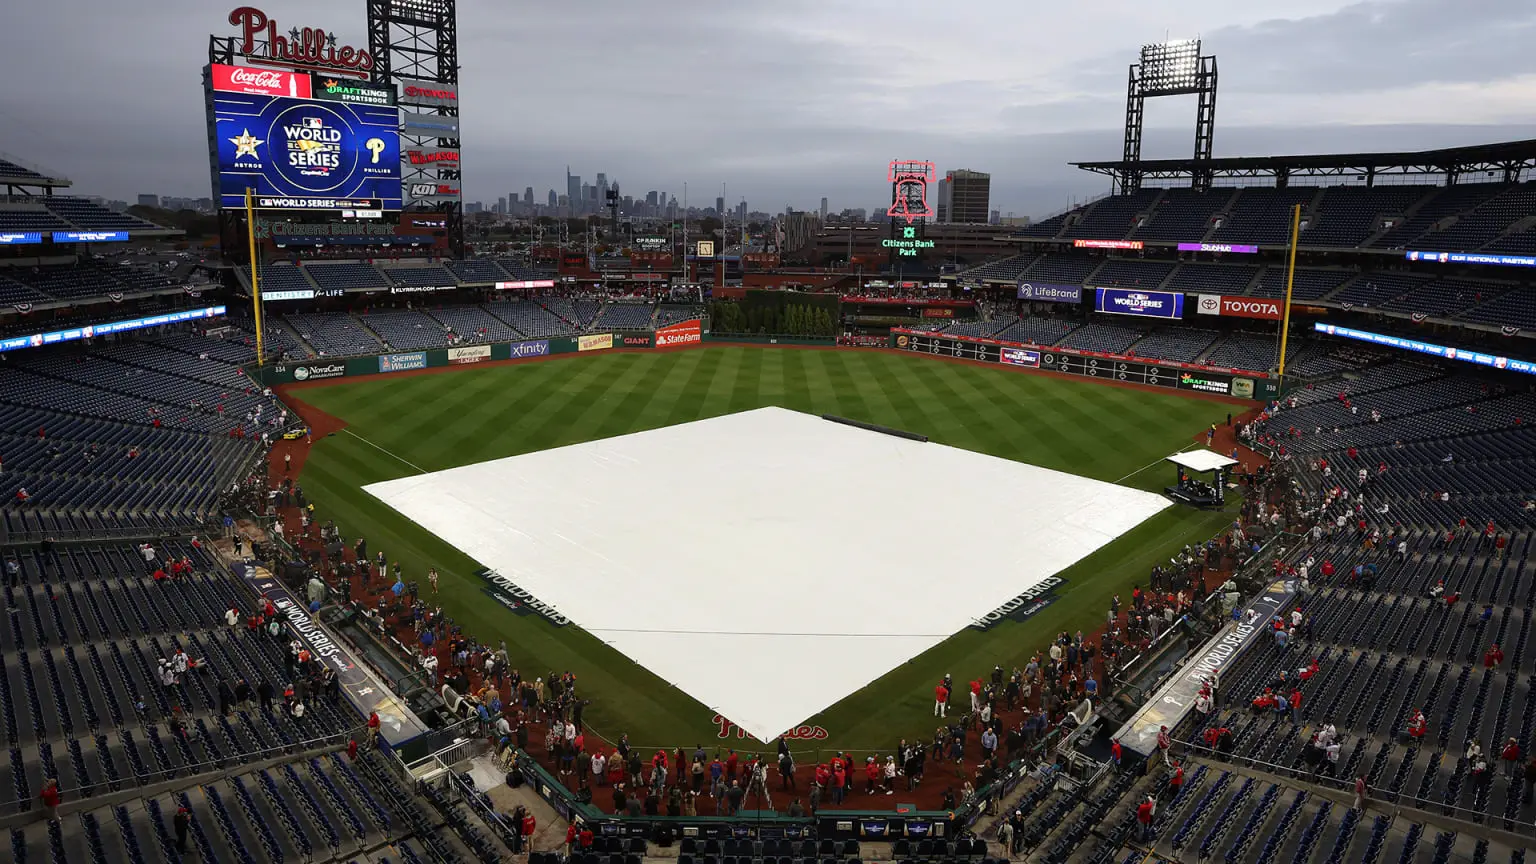 Partida entre Phillies e Astros é adiada devido forte chuva